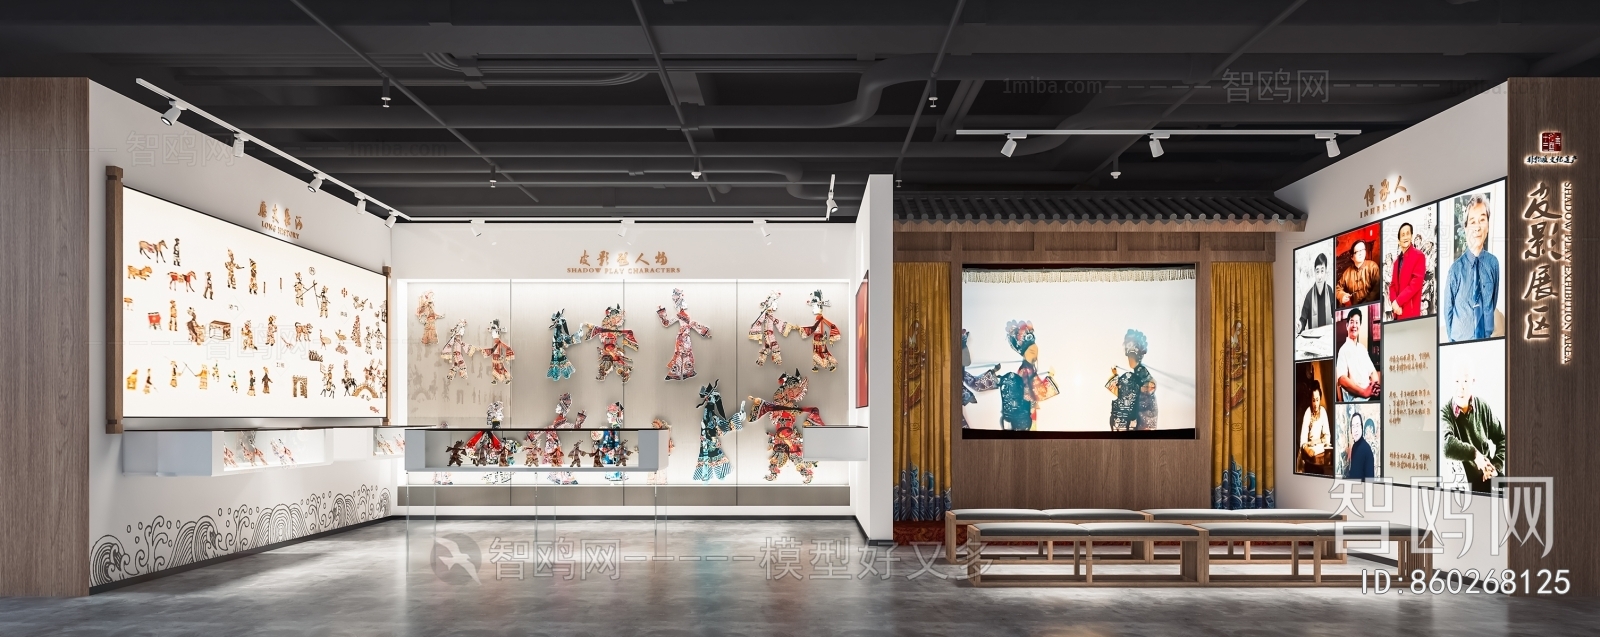 新中式皮影艺术展厅